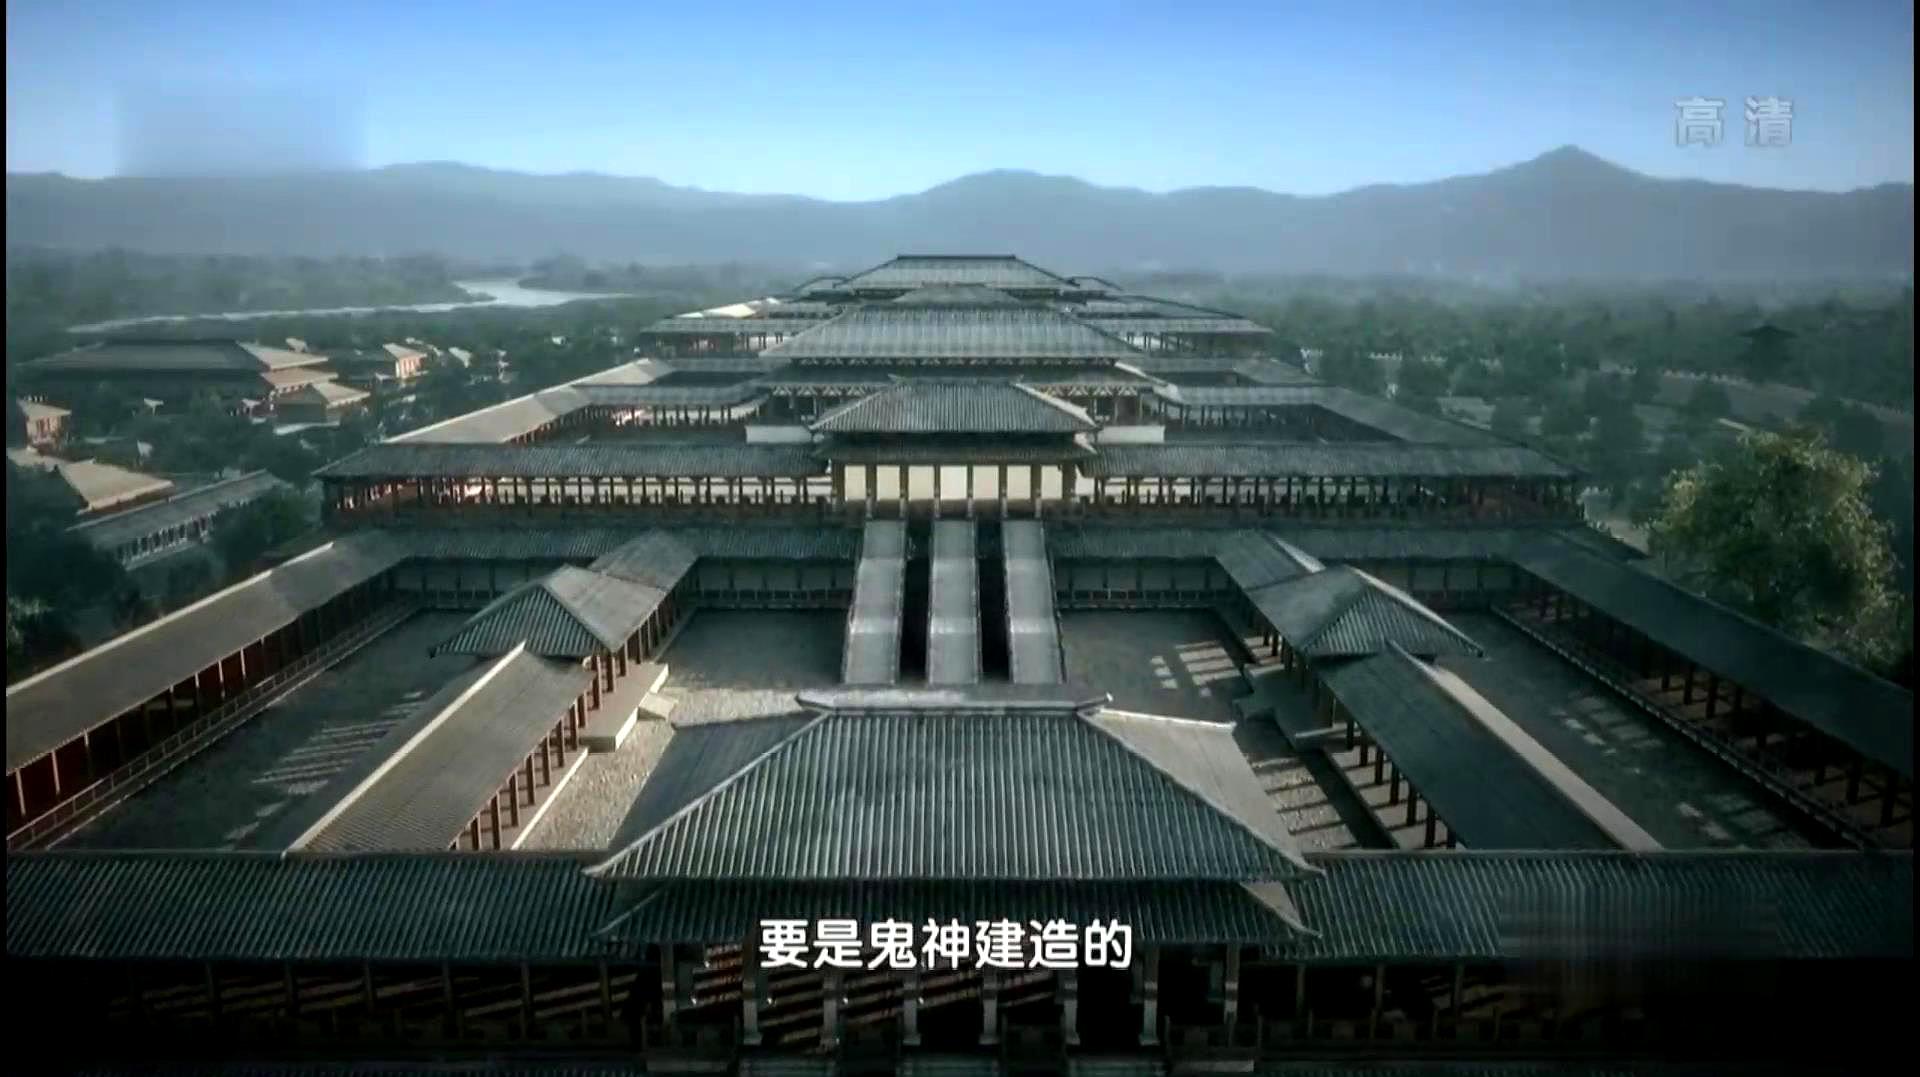 揭秘,秦国第一座都城,雍城,厚达13米的城墙让其固若金汤